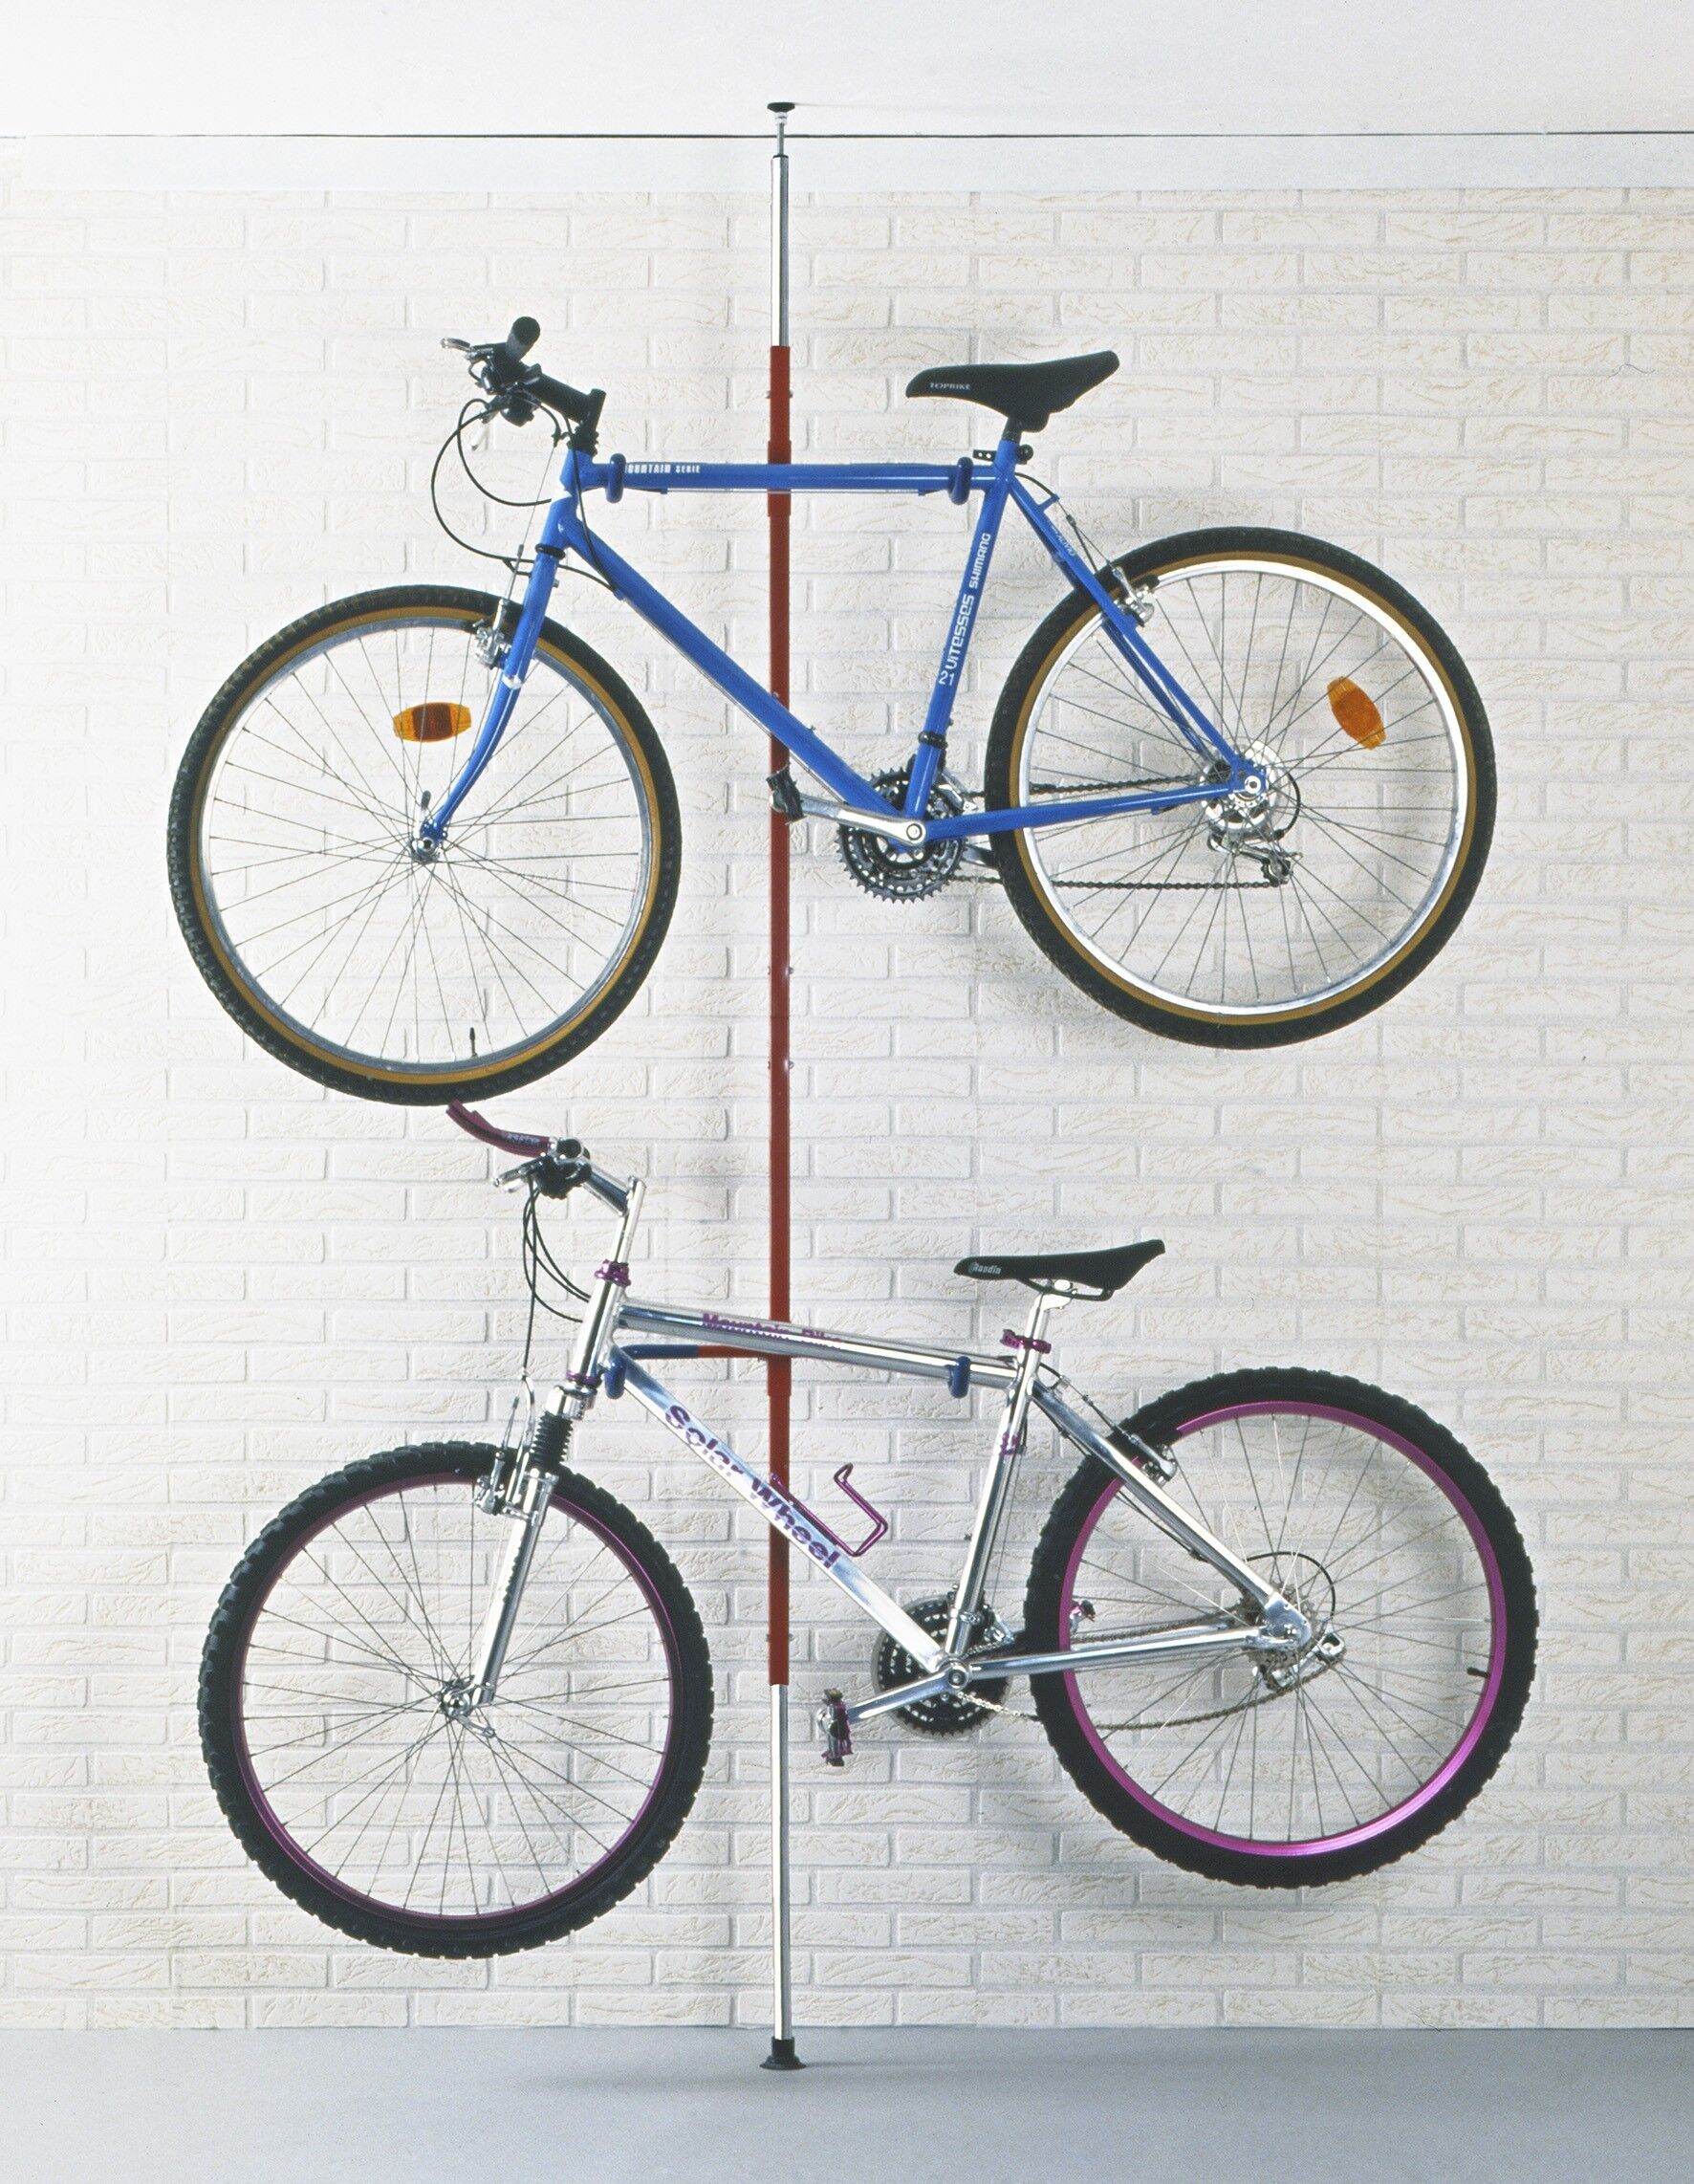 Rack à vélos, support de rangement bicyclette, râtelier vélo